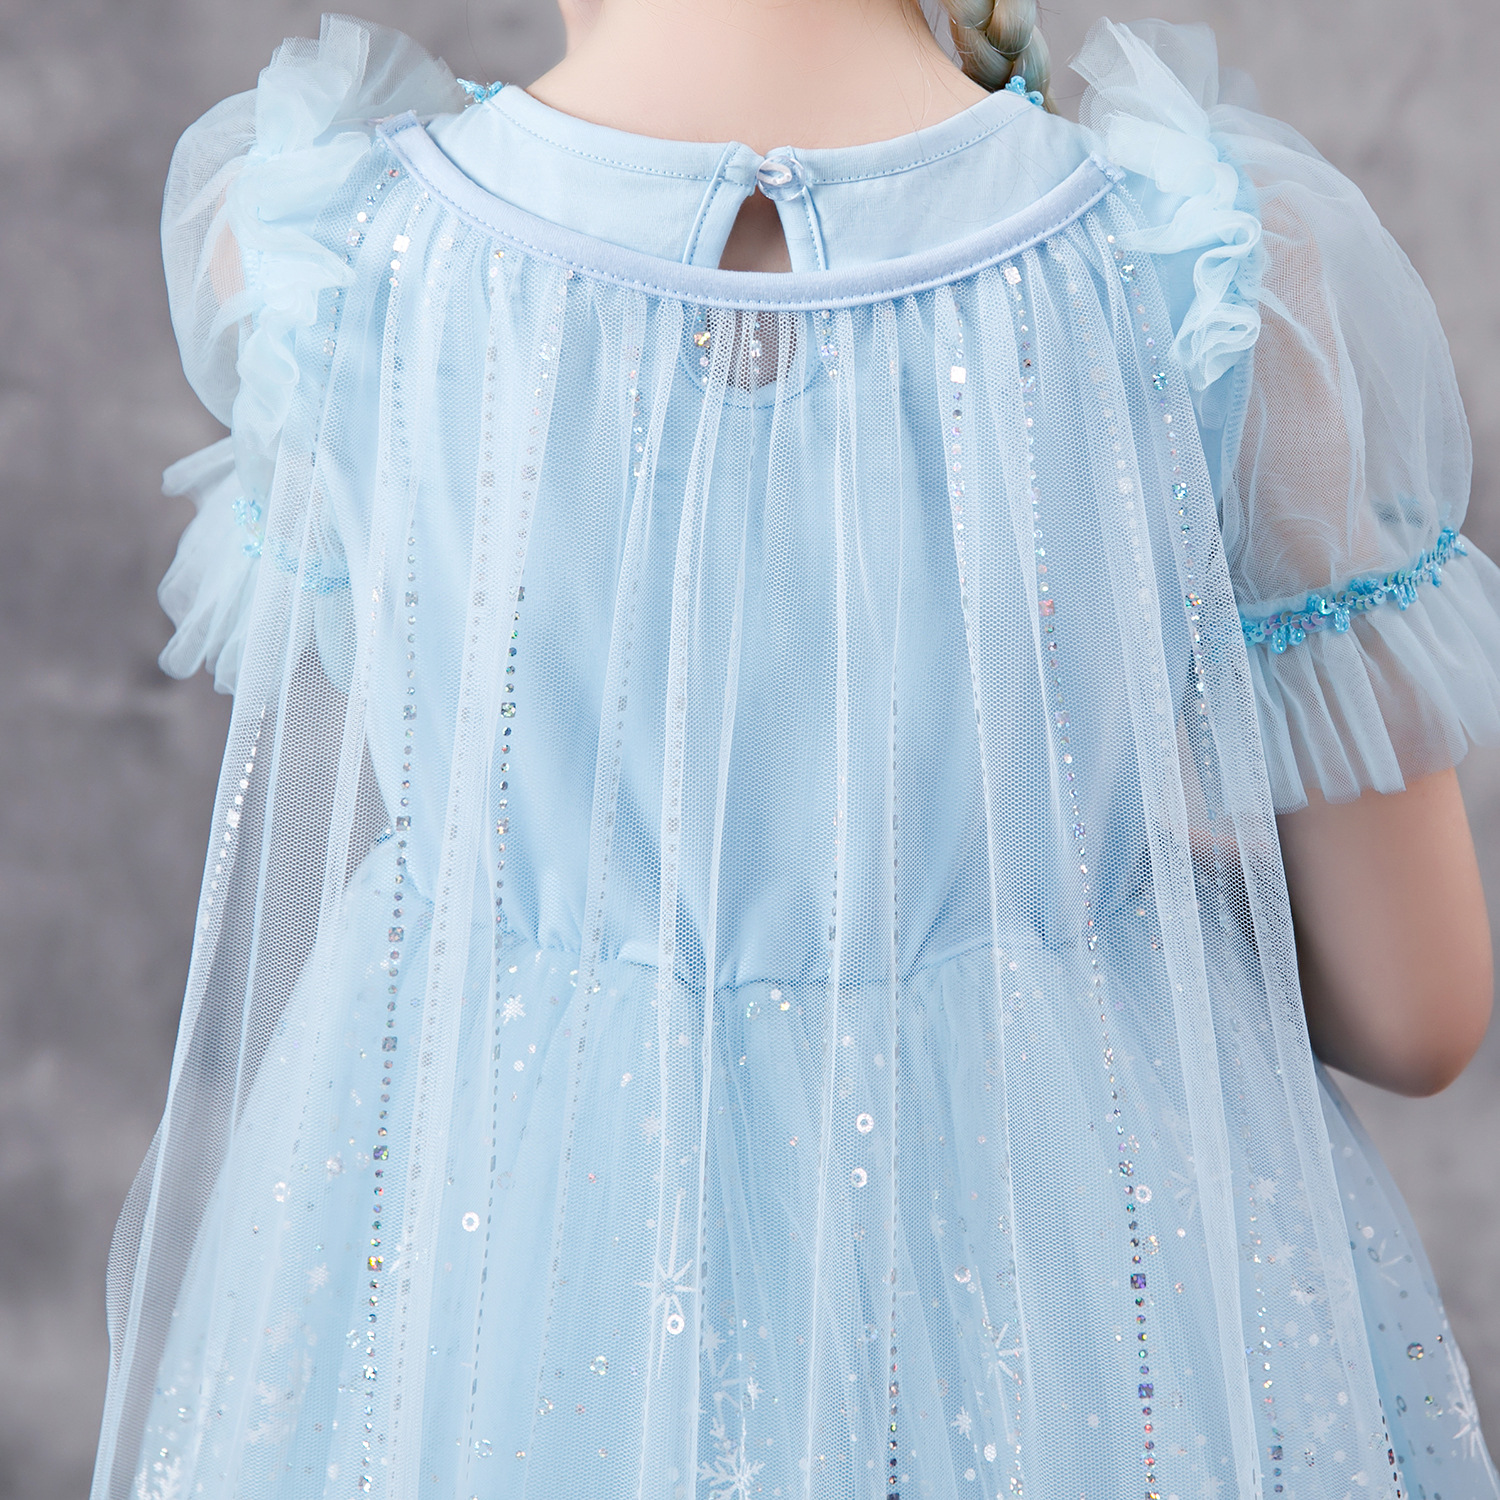 Váy Elsa màu xanh kèm tà dài cho bé gái 3-11 tuổi - Mẫu mới nhất 2021 (Frozen 2)